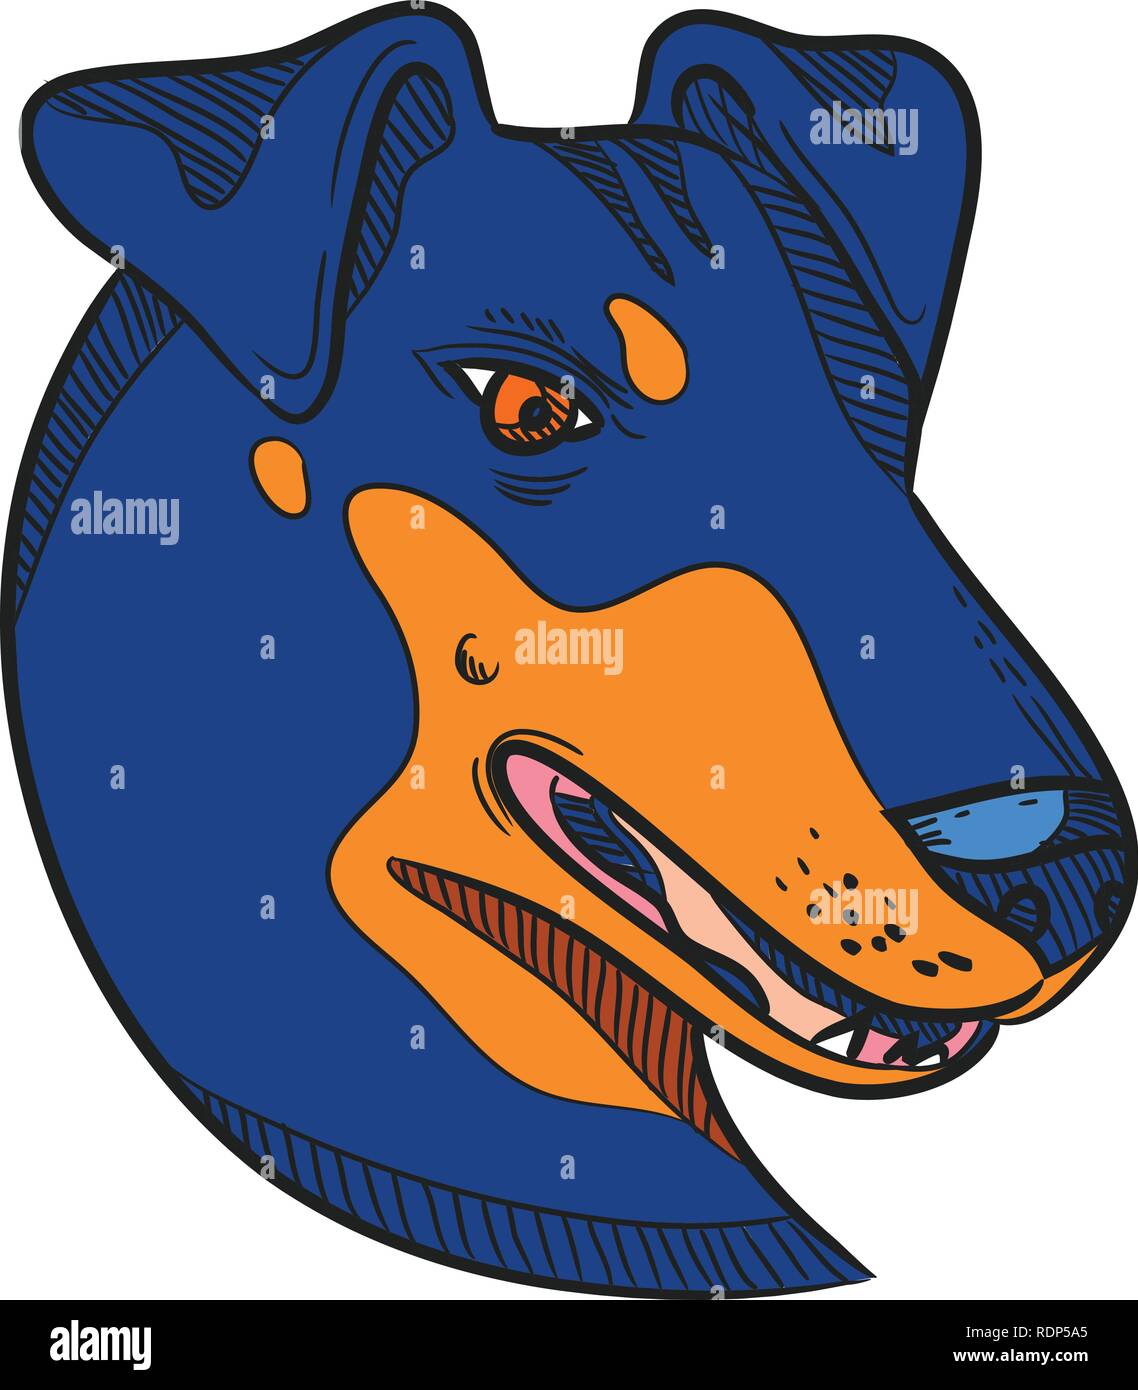 Disegno stile sketch illustrazione della testa di un Manchester Terrier, una razza di cane di smooth-haired terrier tipo visto dal lato sul bianco isolato Illustrazione Vettoriale